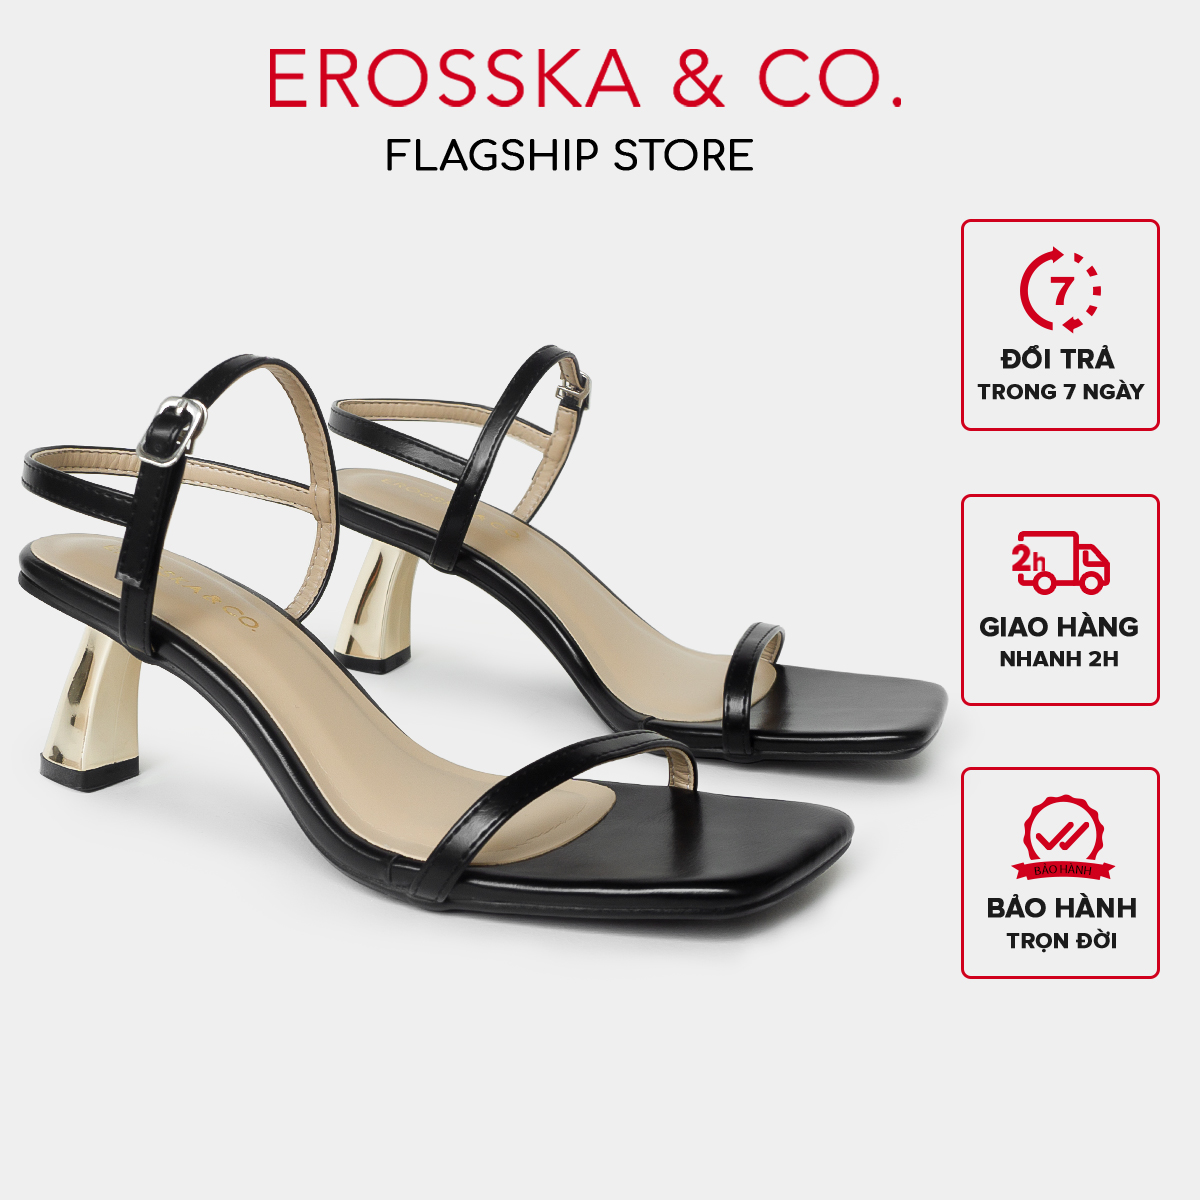 Erosska - Giày sandal cao gót nhọn kiểu dáng Hàn Quốc cao 5cm màu đen _ EB046